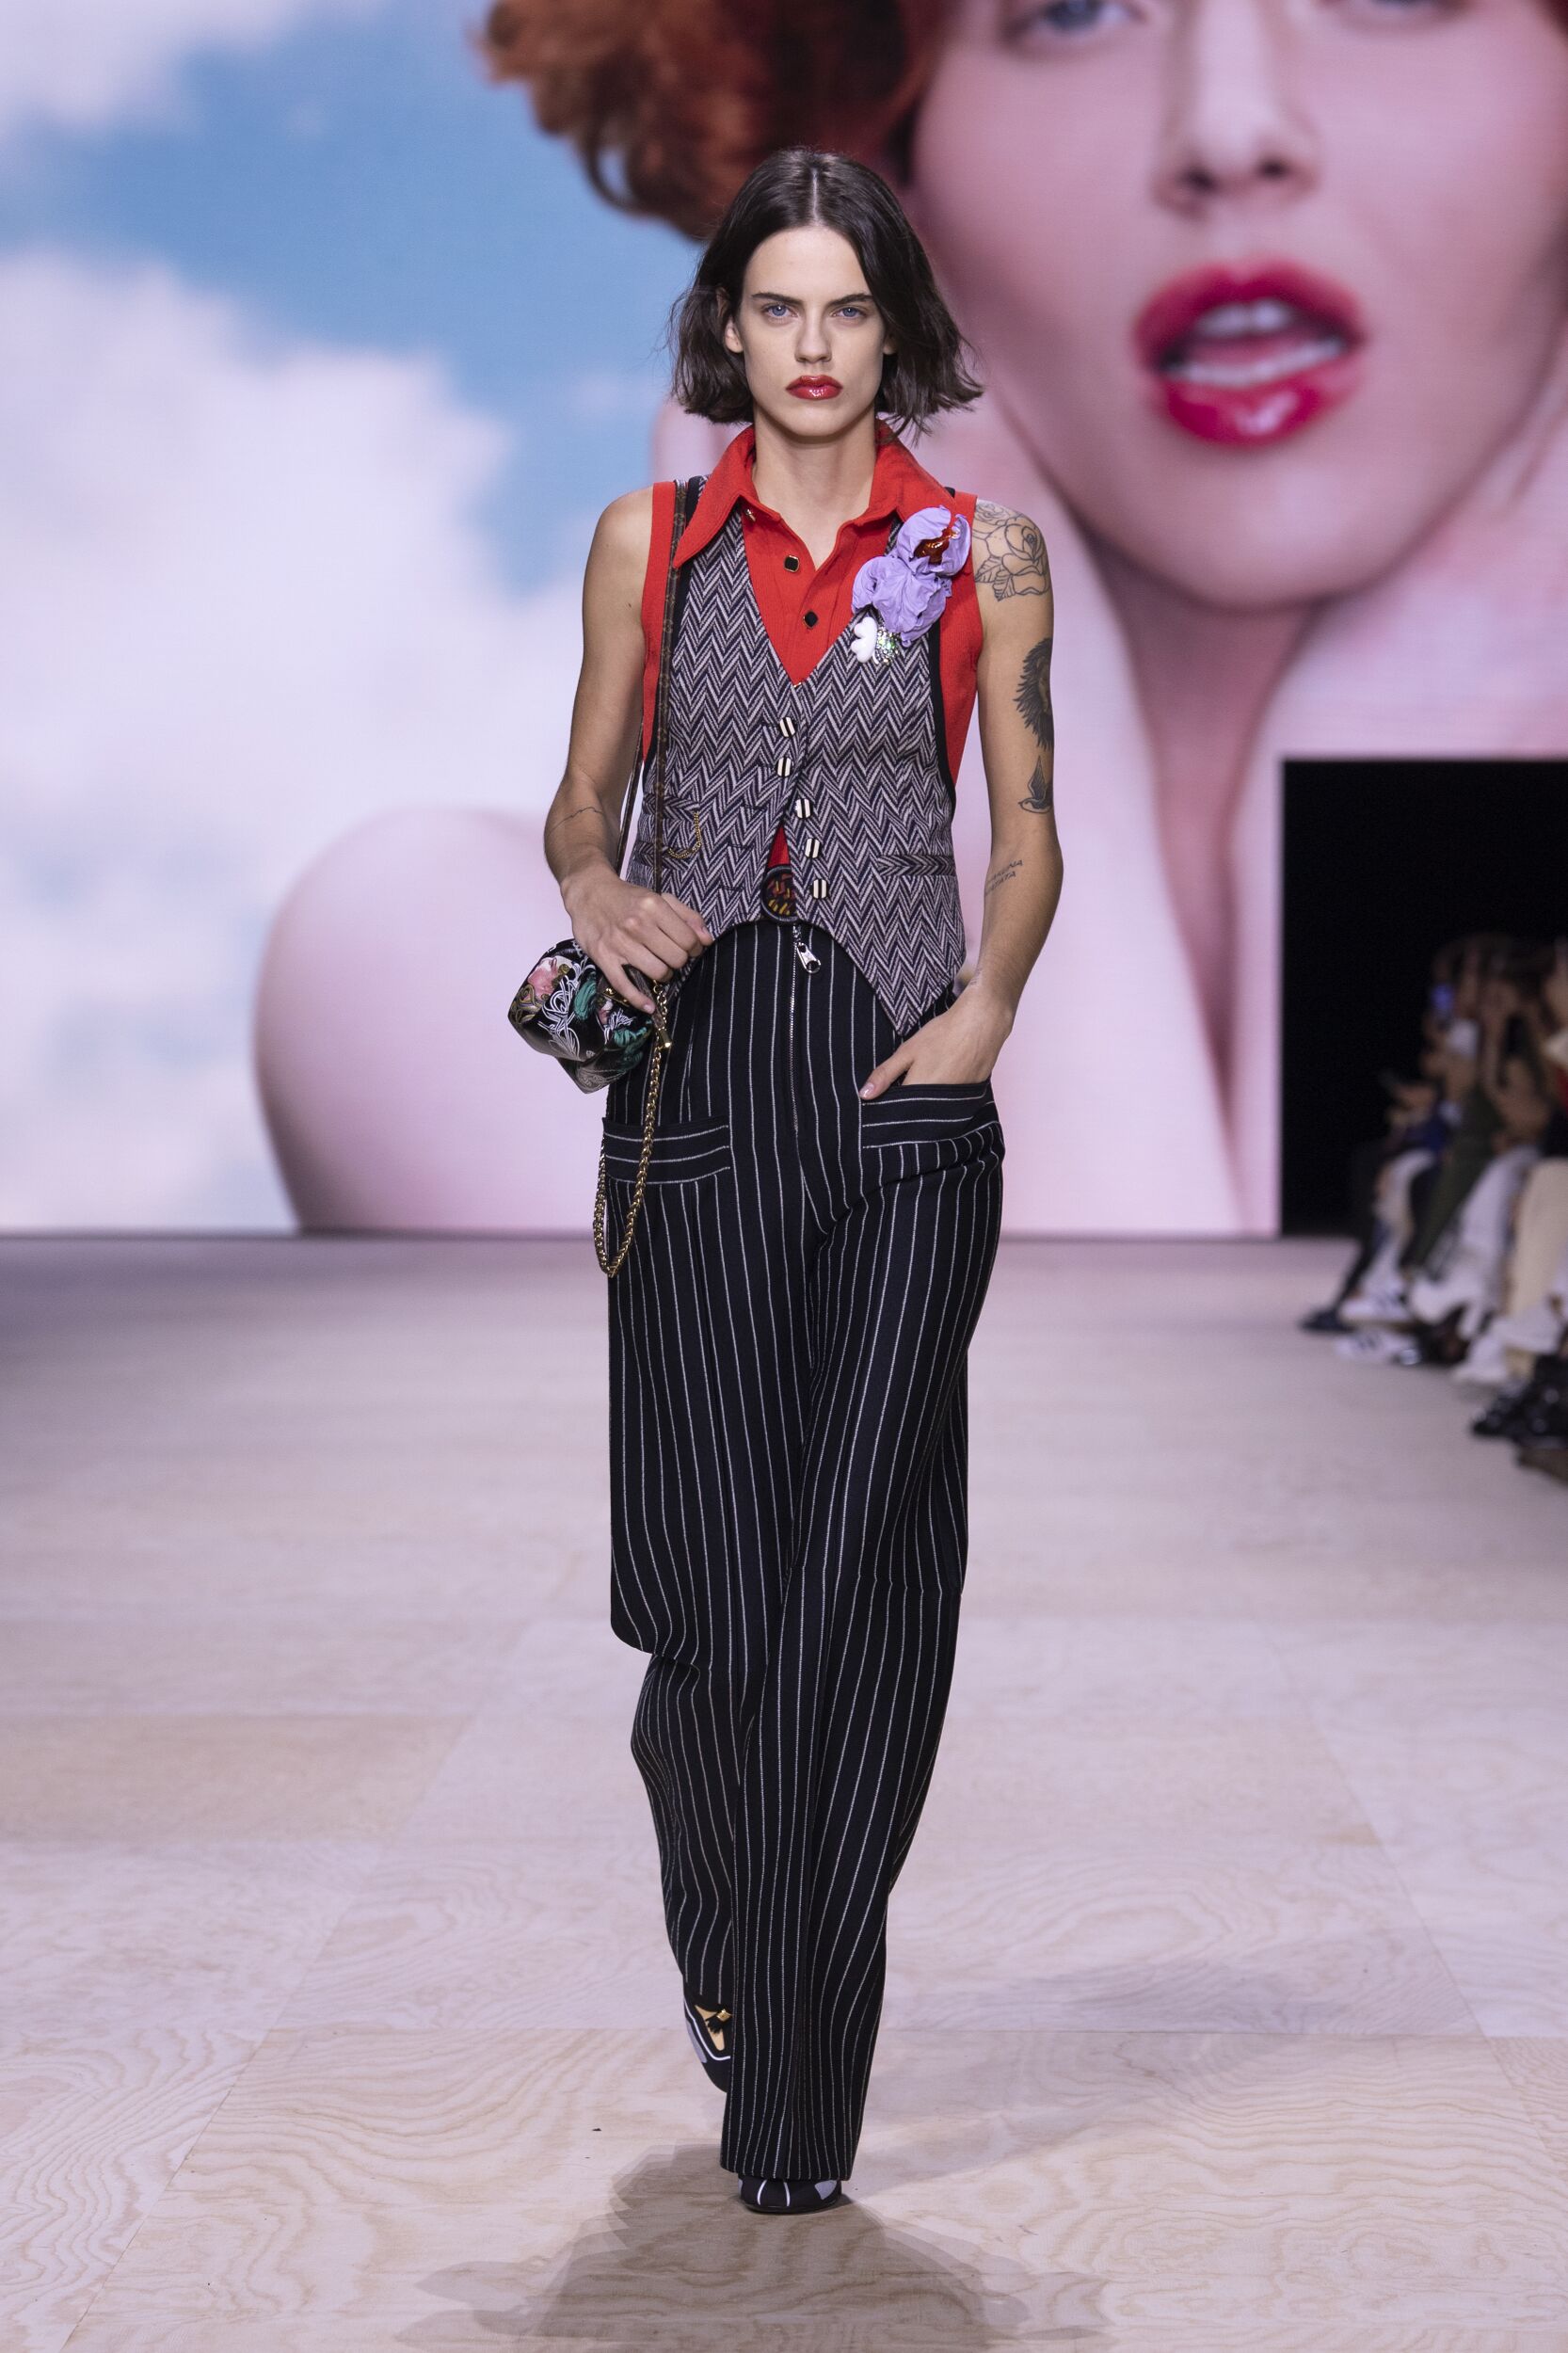 Paris Fashion Week Highlights for Spring 2020: From Louis Vuitton to  Giambattista Valli - A&E Magazine